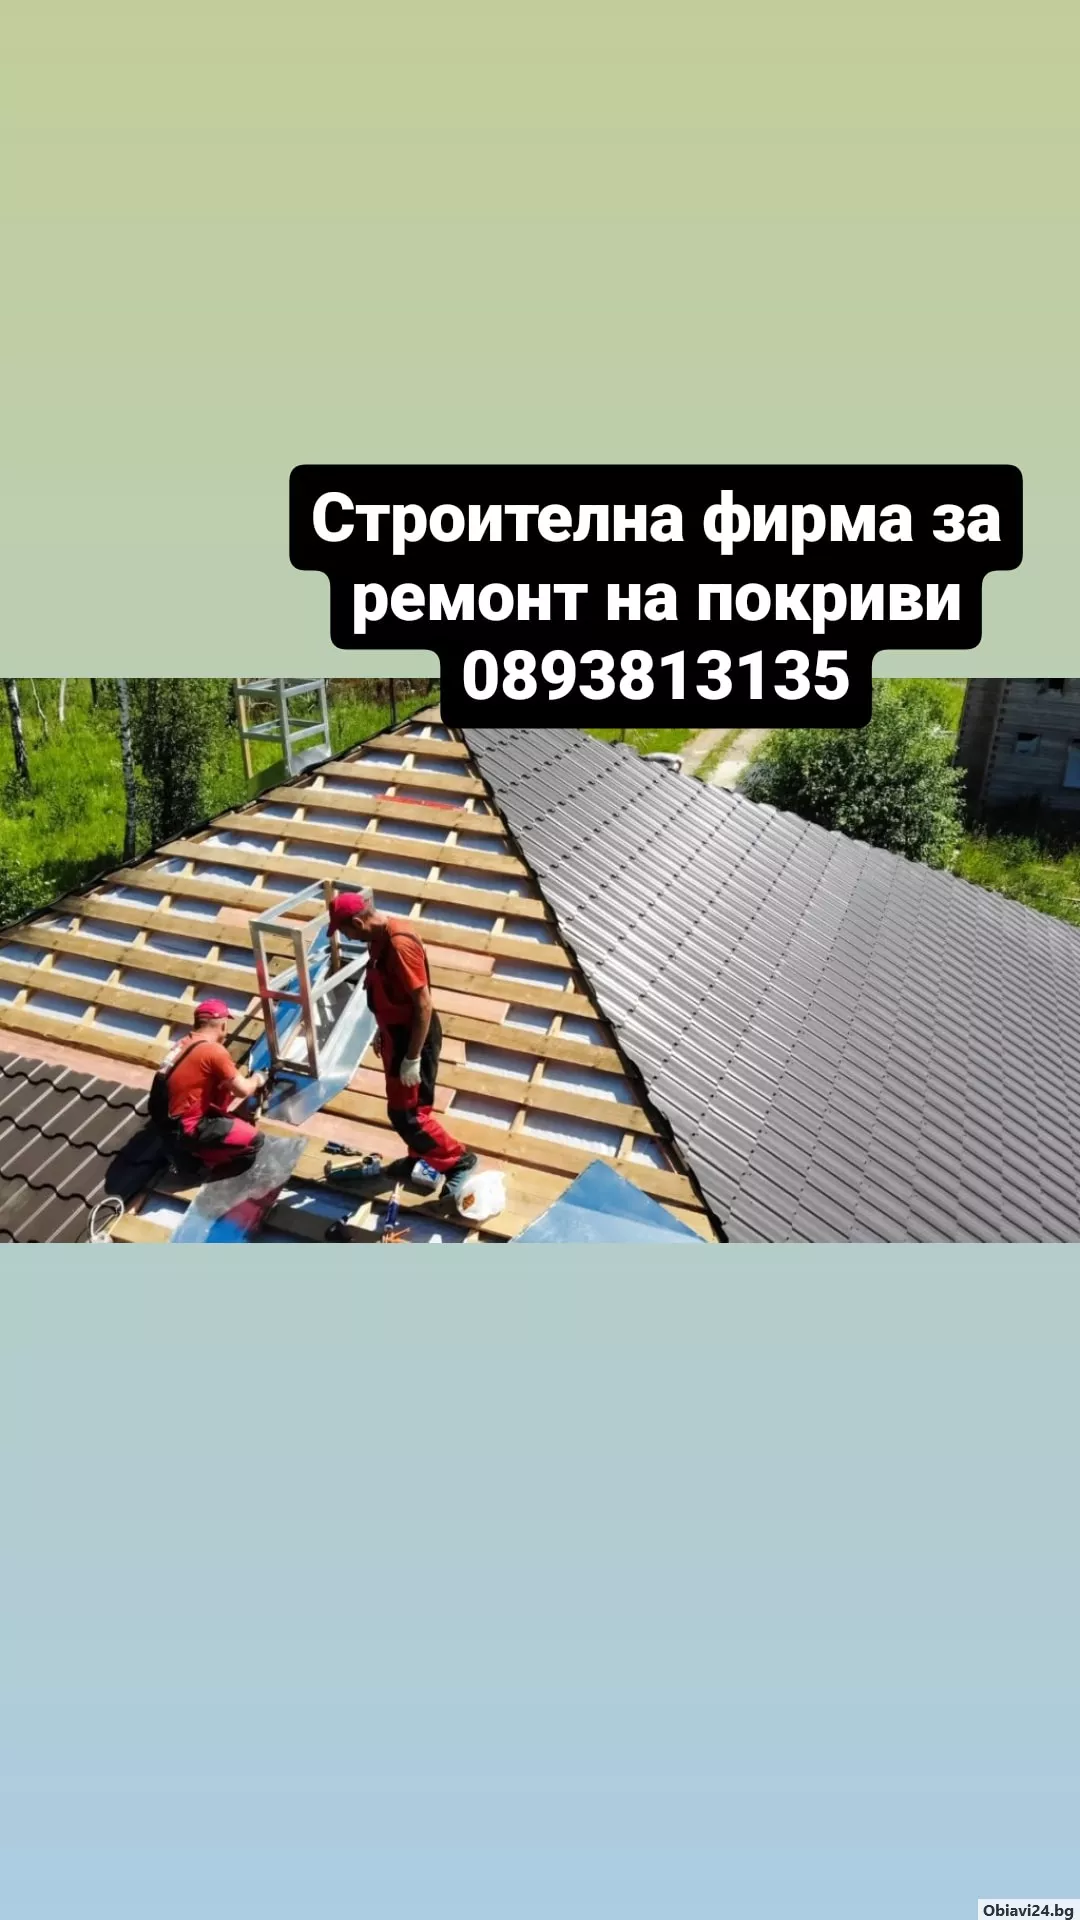 Навеси покриви нови покриви Частичен Ремонт на покрив отстраняване на течове - obiavi24.bg